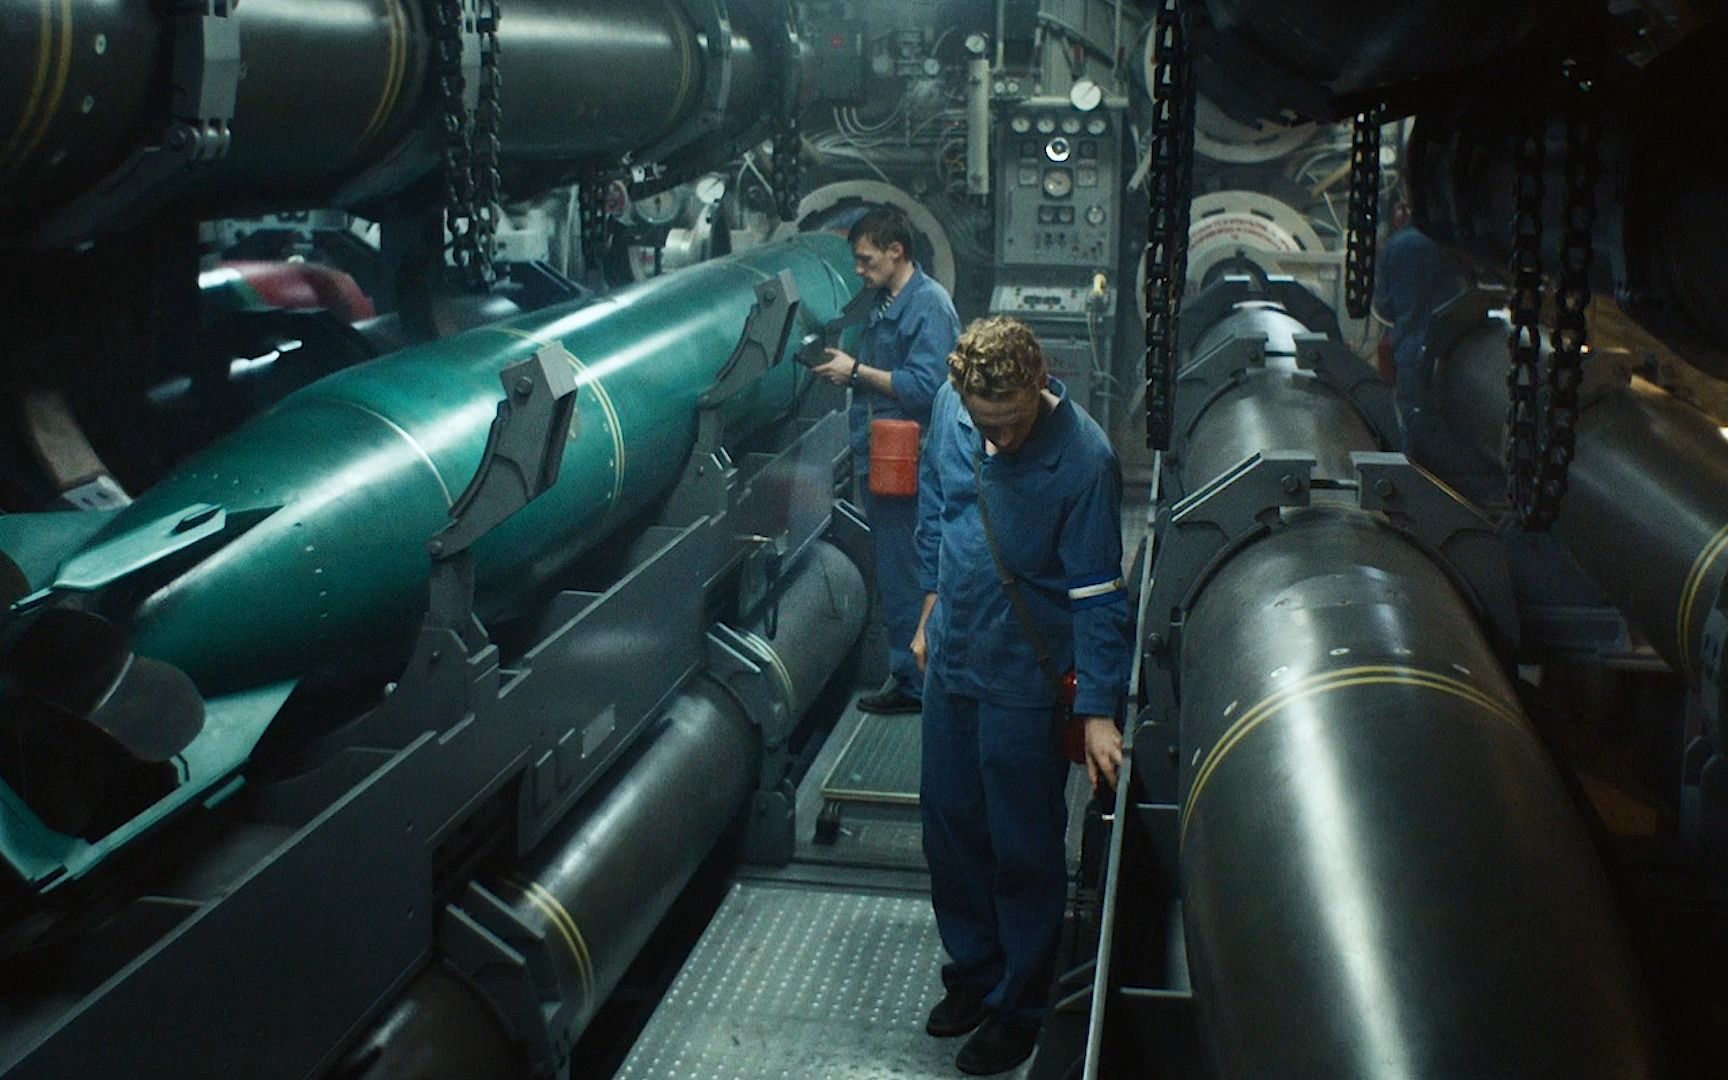 灾难电影的优质代表,著名的库尔斯克核潜艇事故